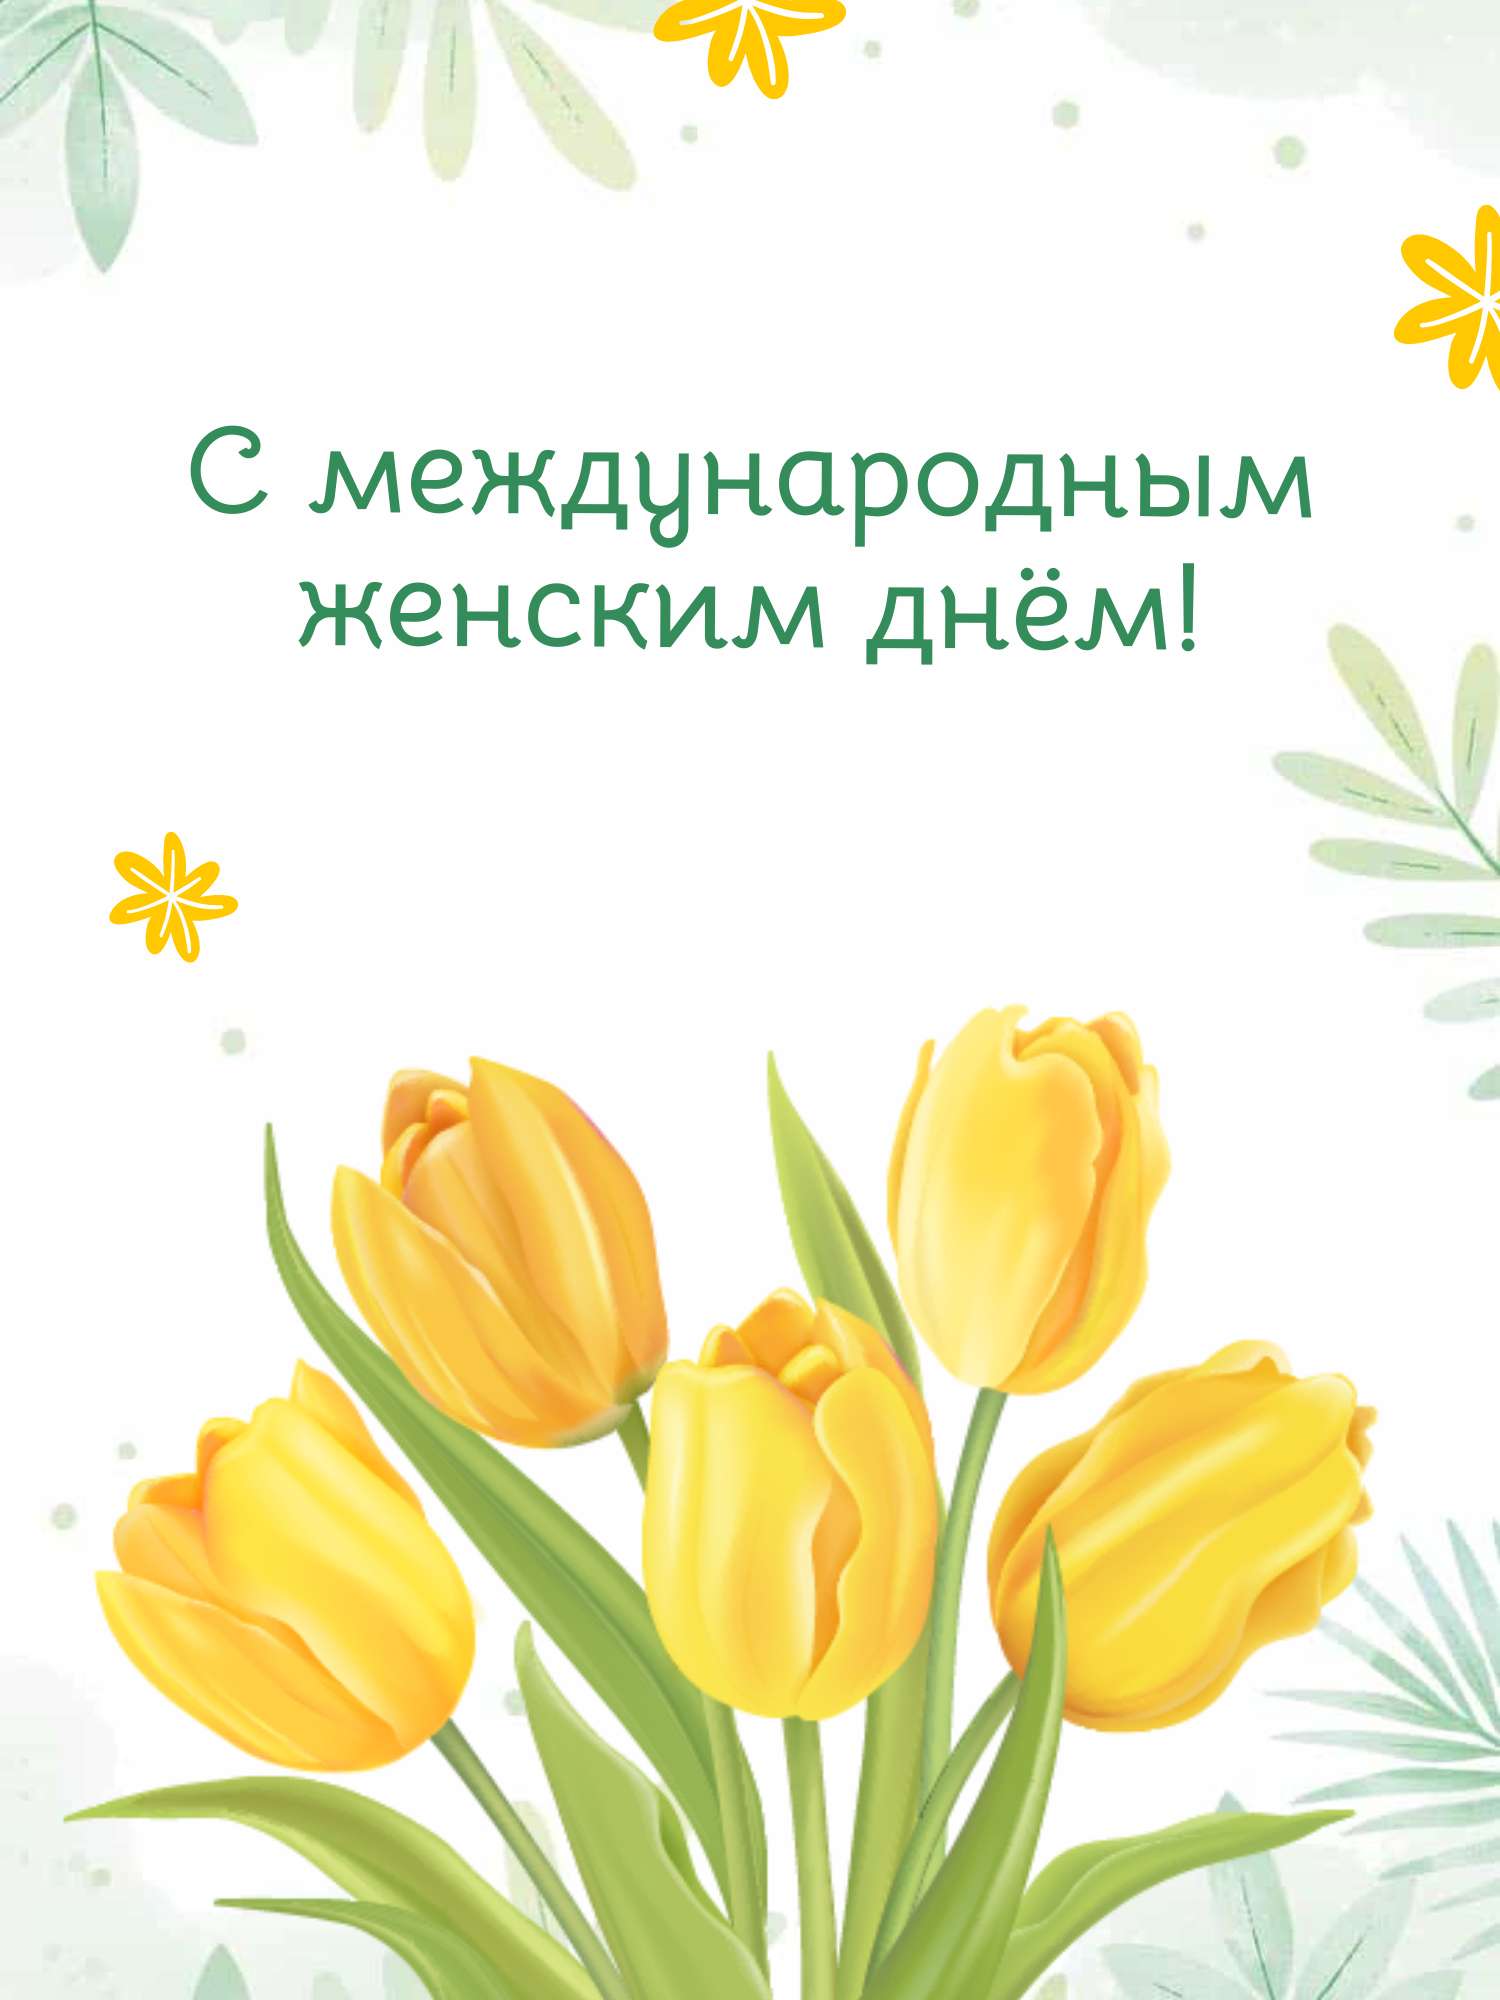 Лимонные желтые тюльпаны на белом фоне в готовой открытке в день 8 марта